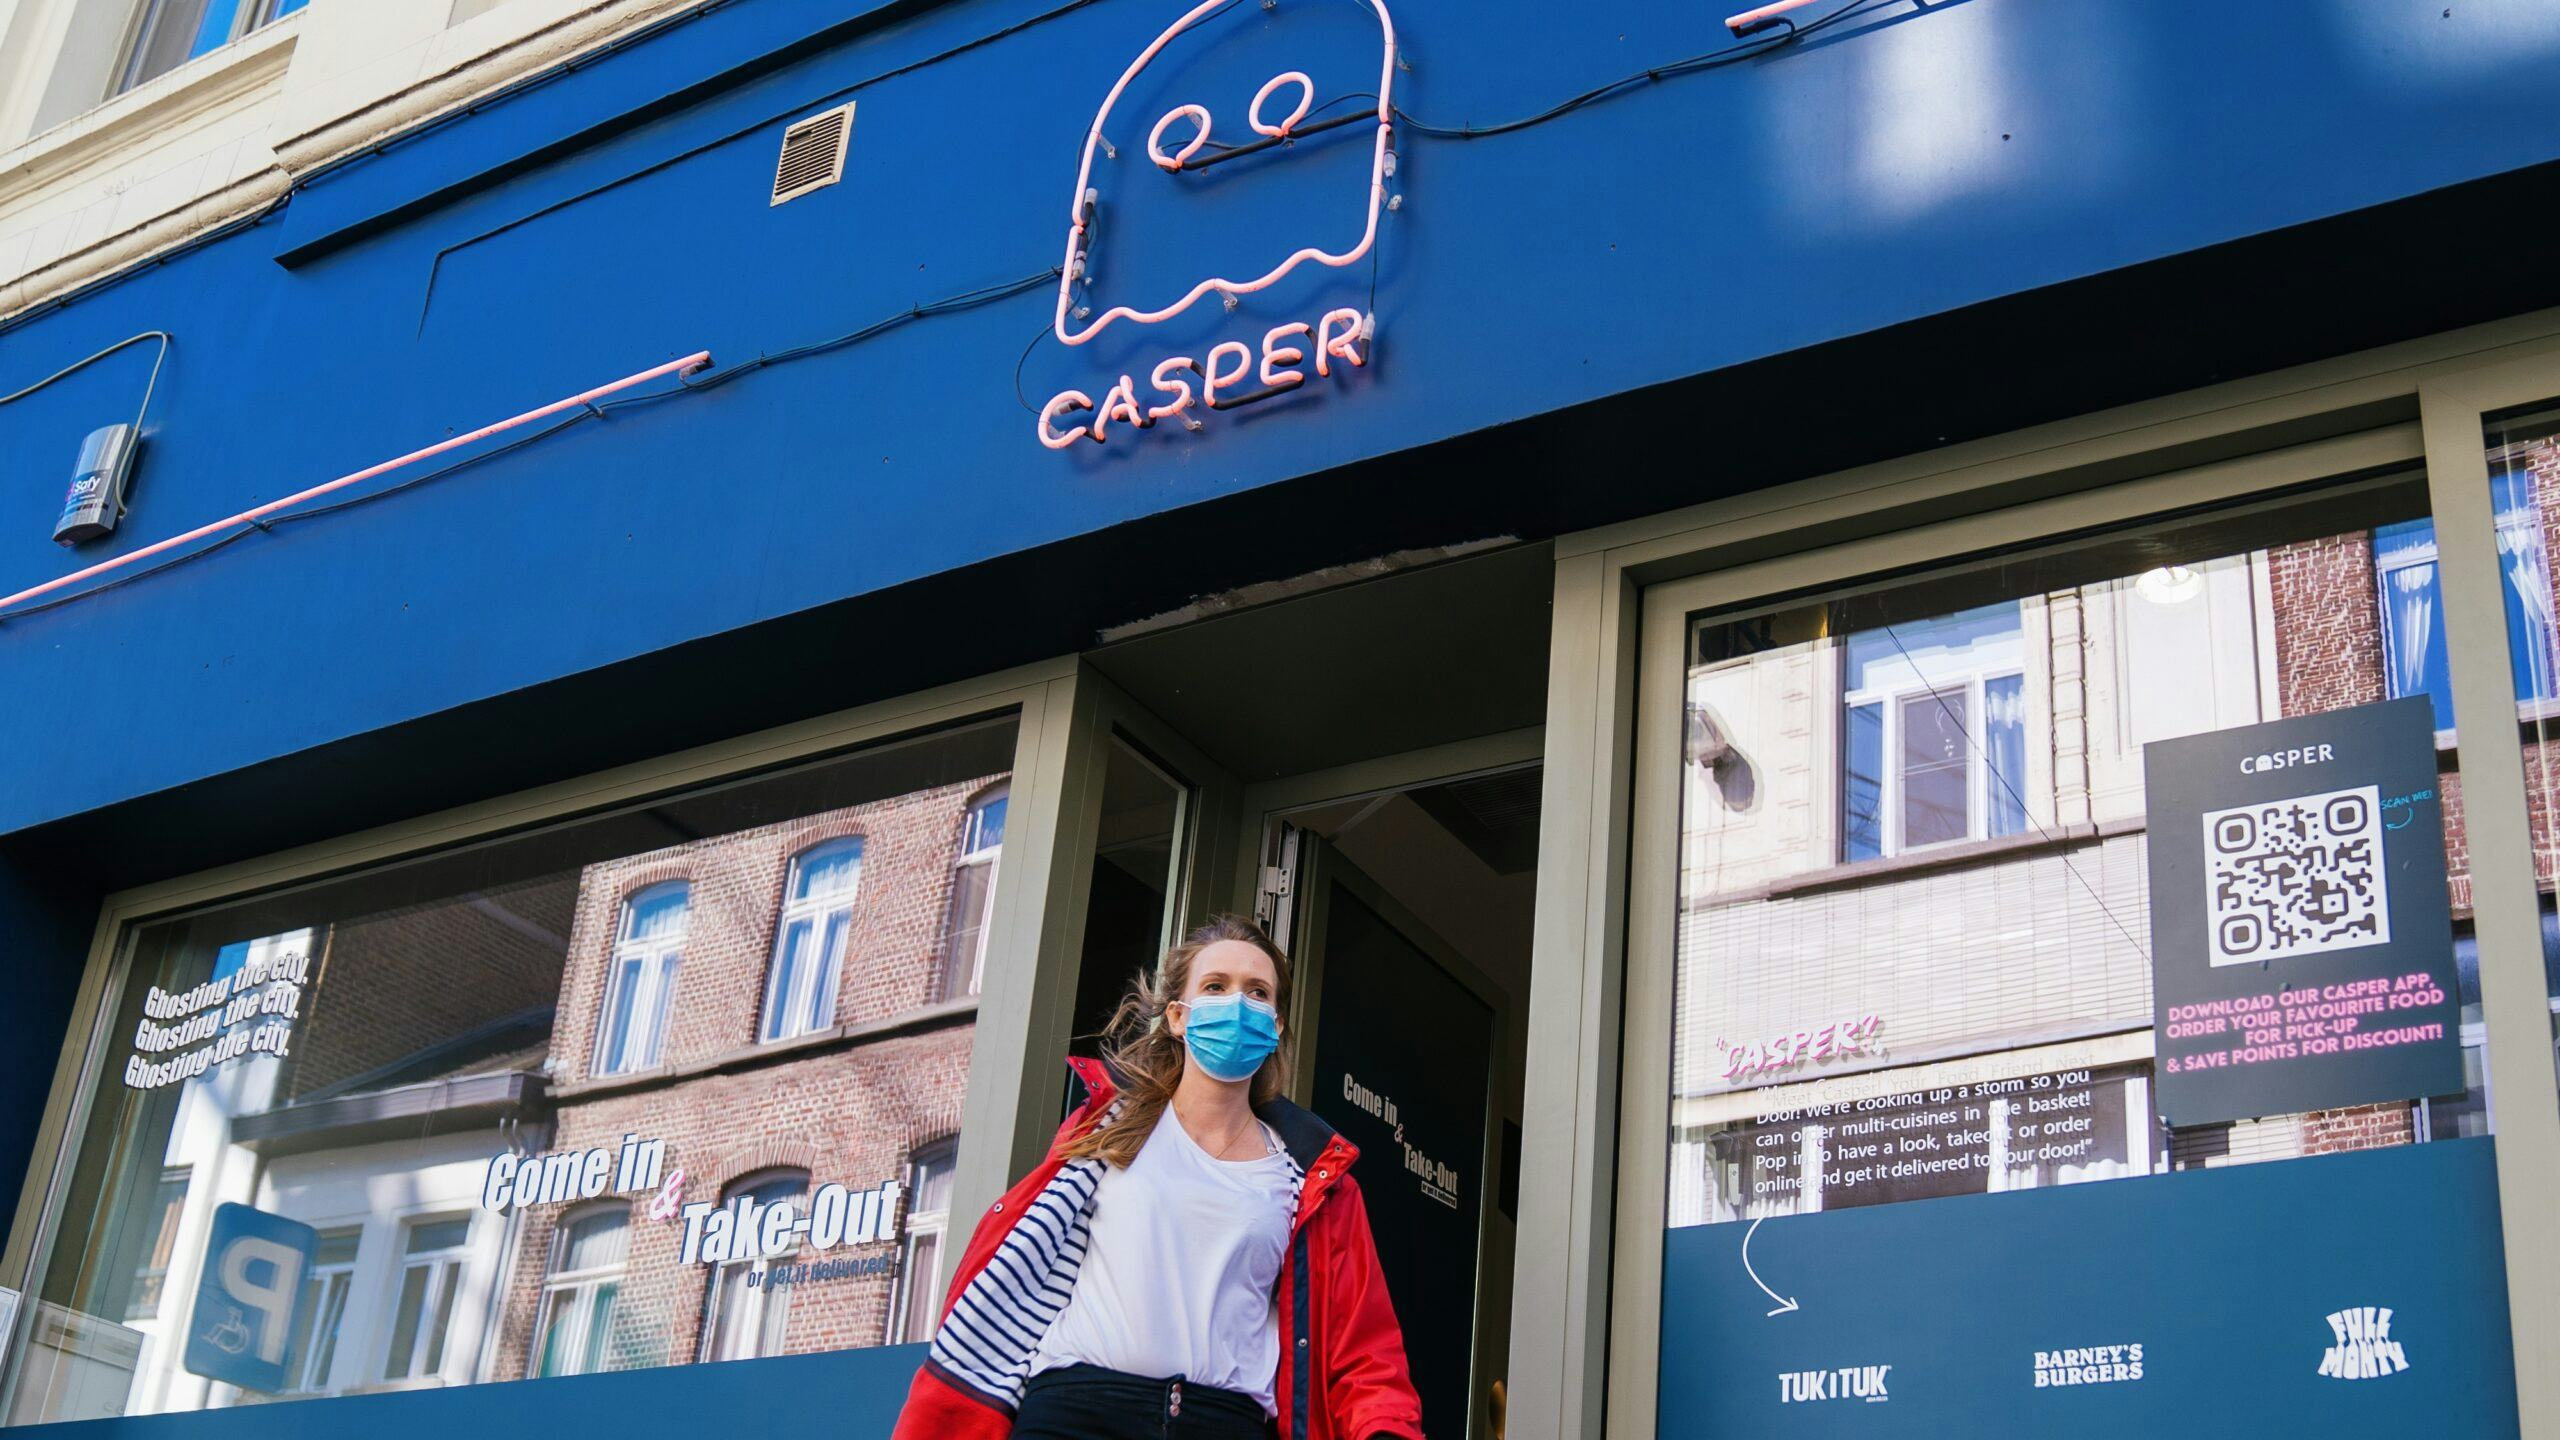 Dark kitchen-keten Casper komt naar Nederland